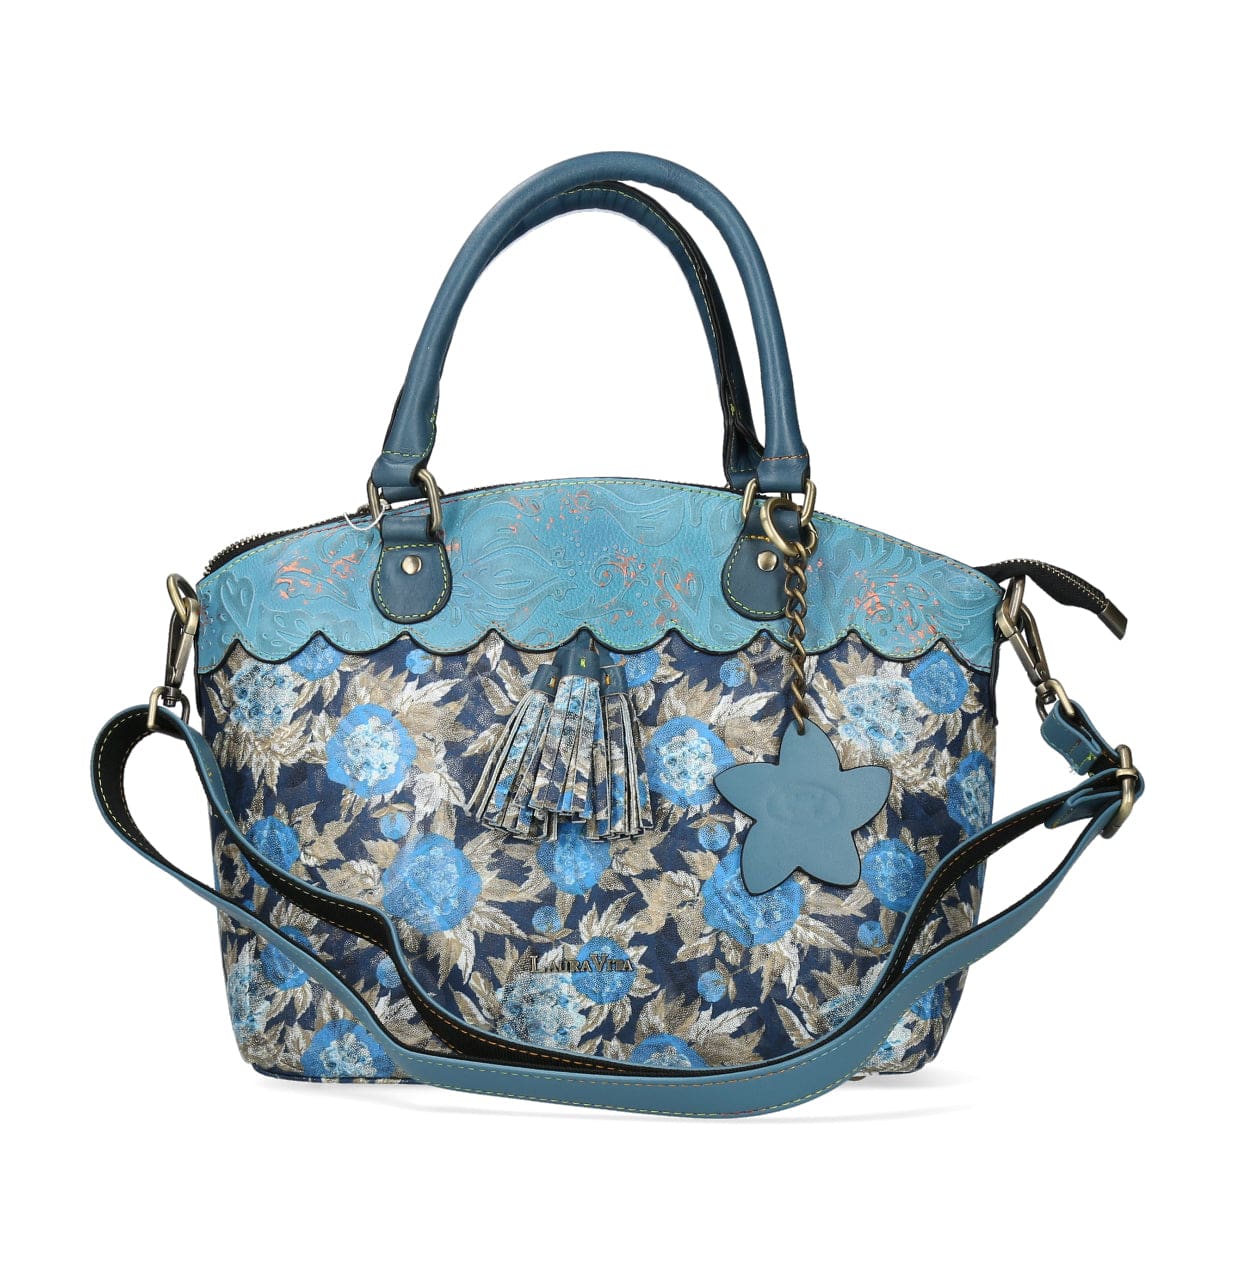 Taschen Handtasche 4736 - Blau - Taschen